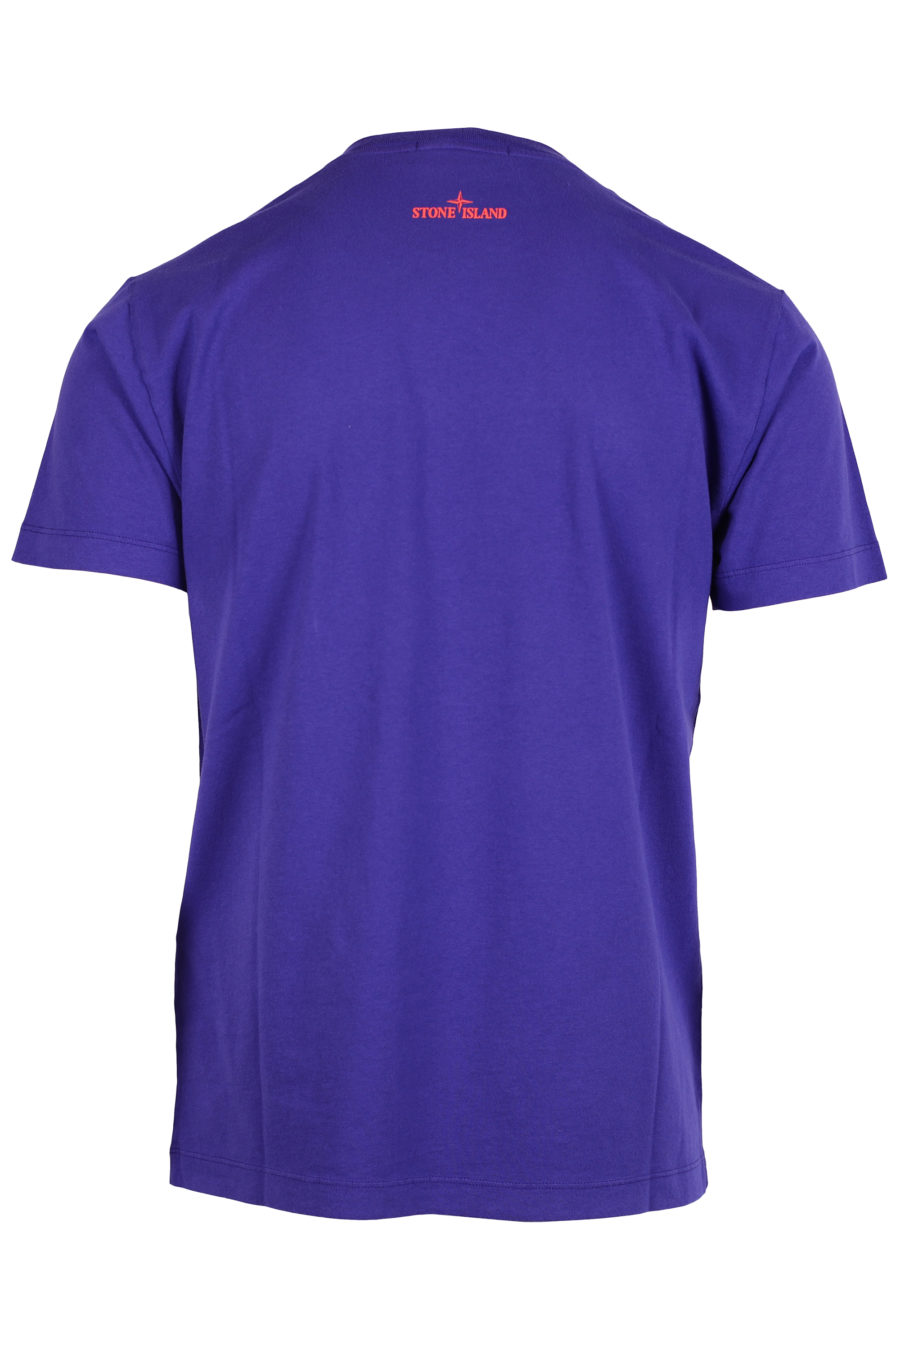 Camiseta de color violeta con logotipo multicolor grande - IMG 2508